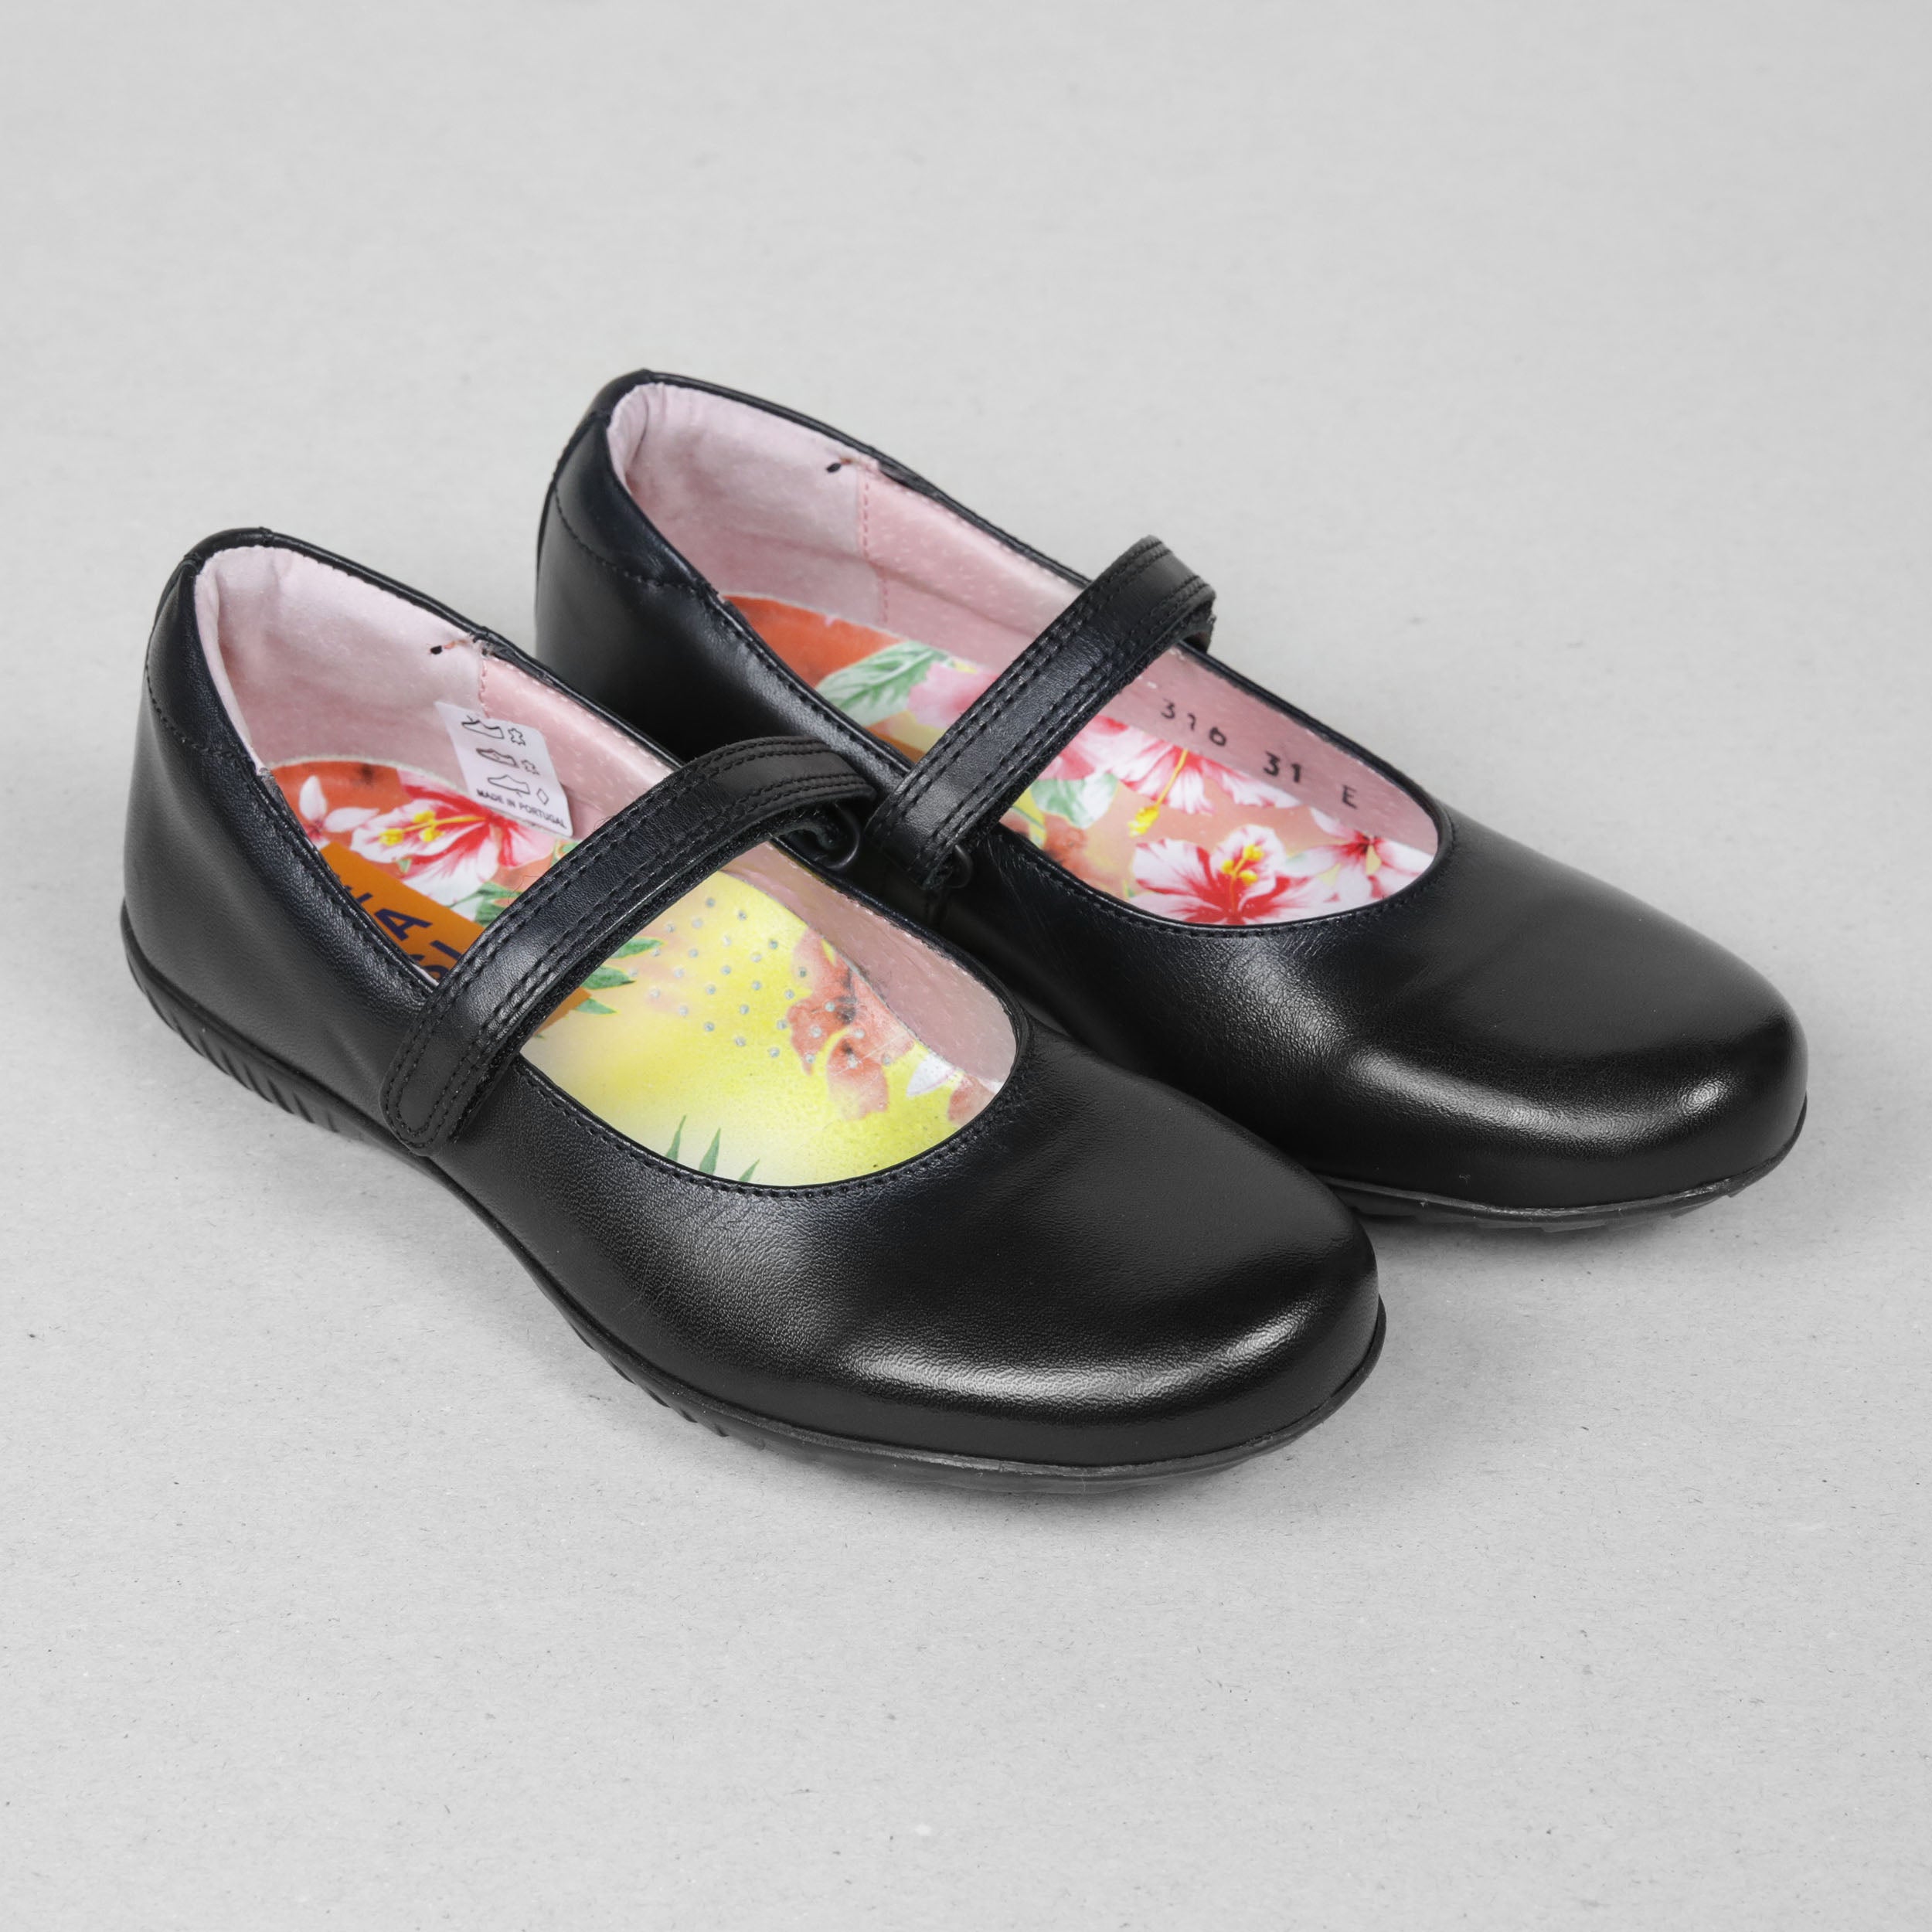 Petasil Evie 2 Kids Girls Black Leather Mary Jane Shoes - UK size 6 / EU39